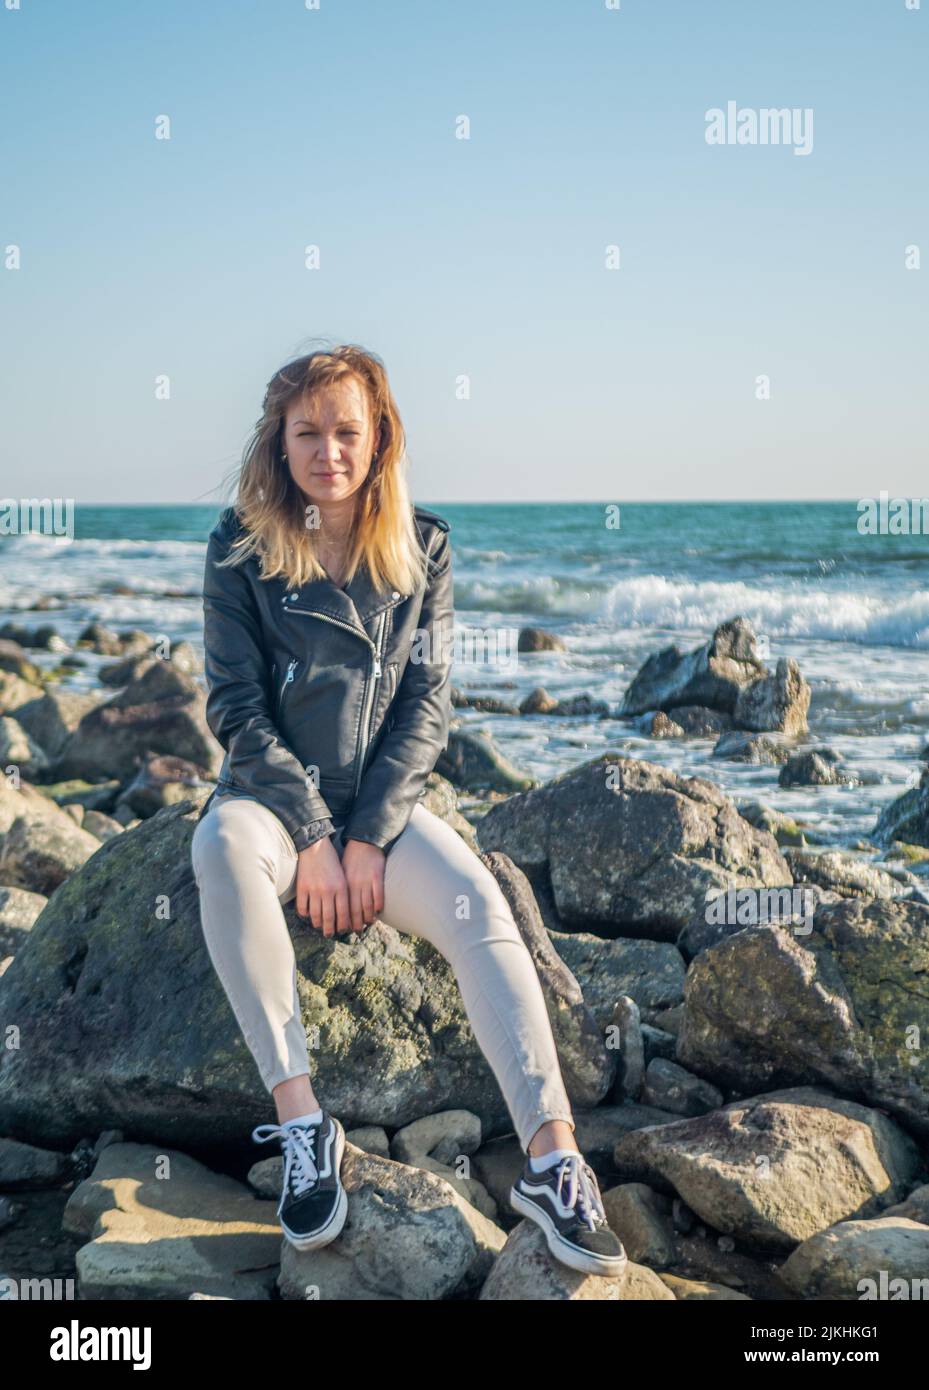 ritratto di una ragazza in piedi sulle rocce su uno sfondo del mare Foto Stock